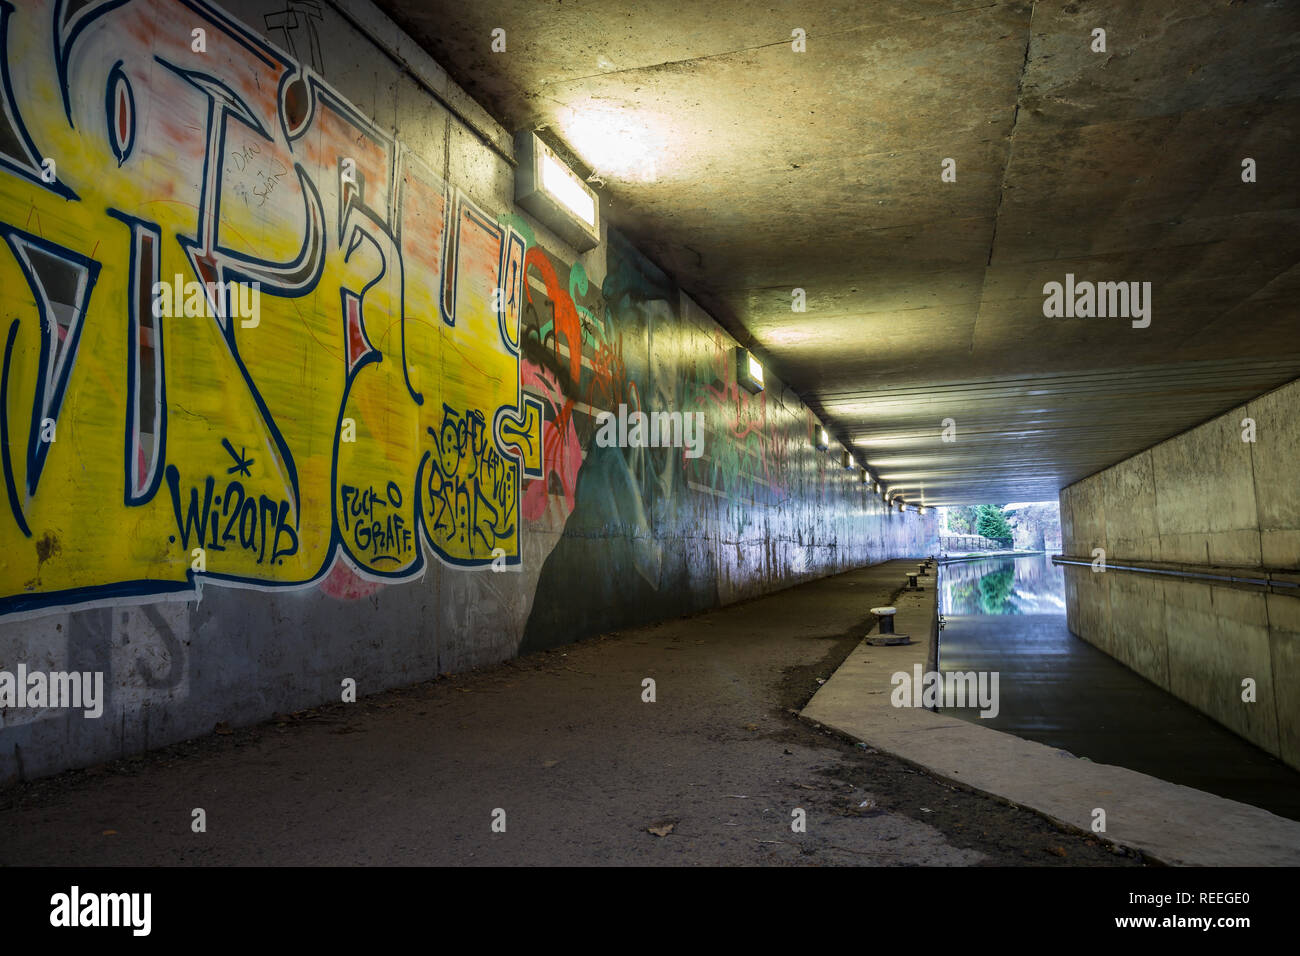 Landschaft der Kanalseite, u-bahn Graffiti gesprüht auf Wände in Fußgängerunterführung, UK. Geißel unserer Wasserstraßen Erbe oder künstlerischen Ausdruck? Stockfoto